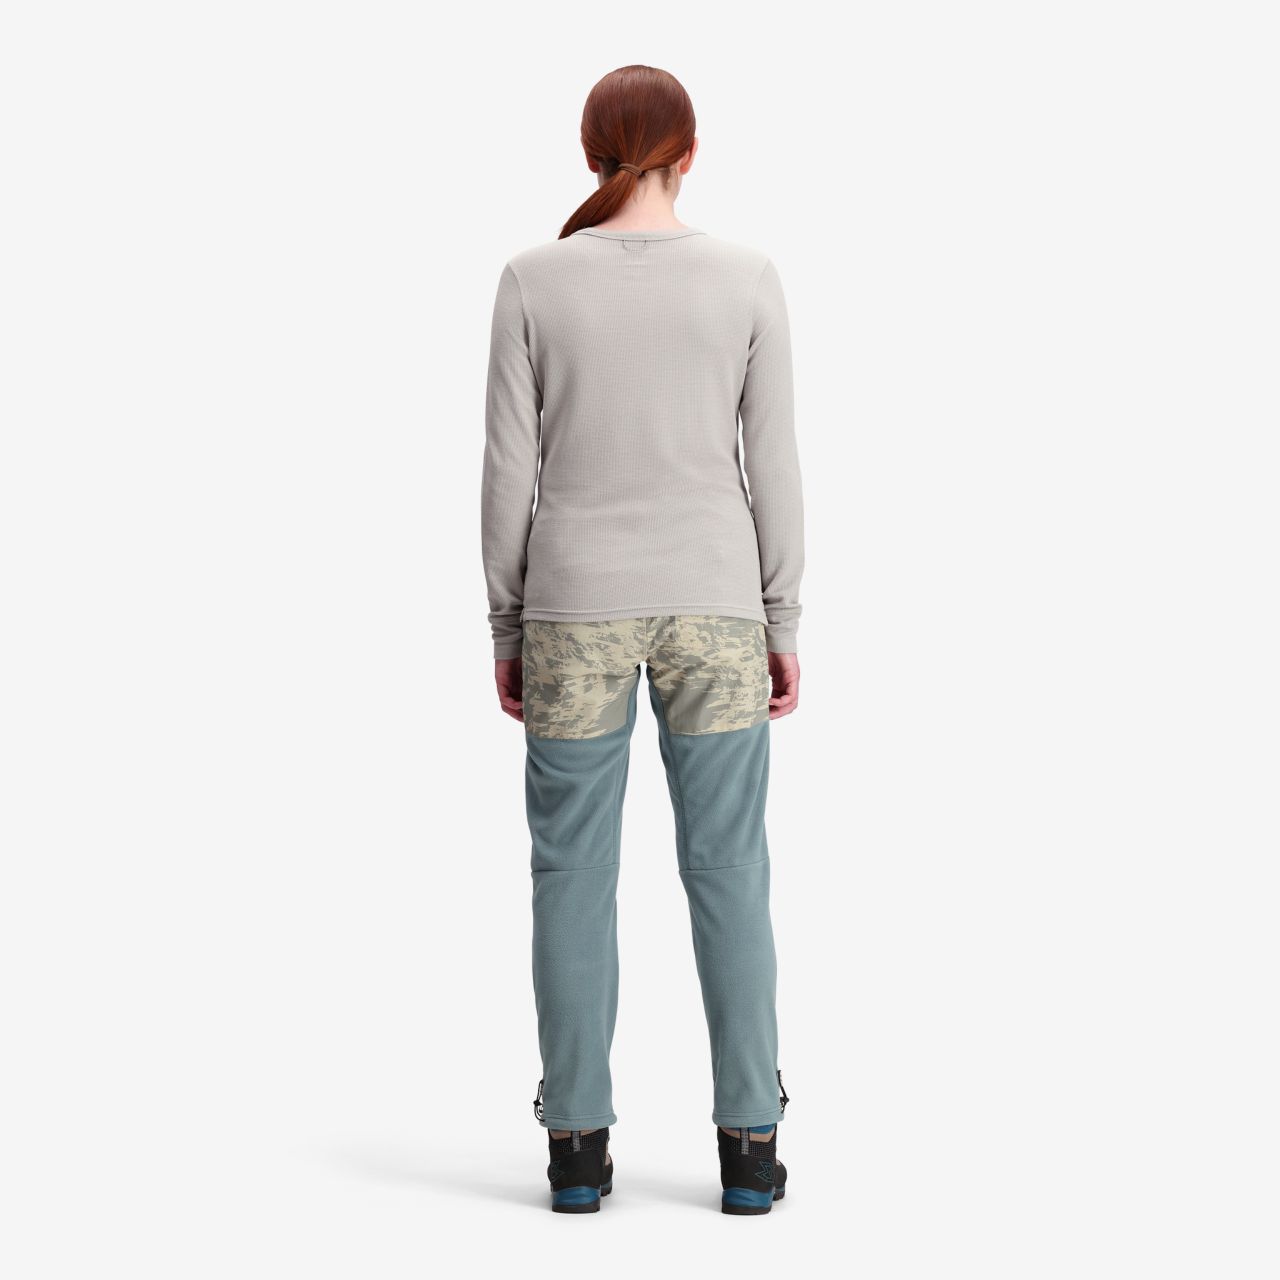 Topo Designs, Pants & Jumpsuits, Topo Designs Fleece Pants S Nwt